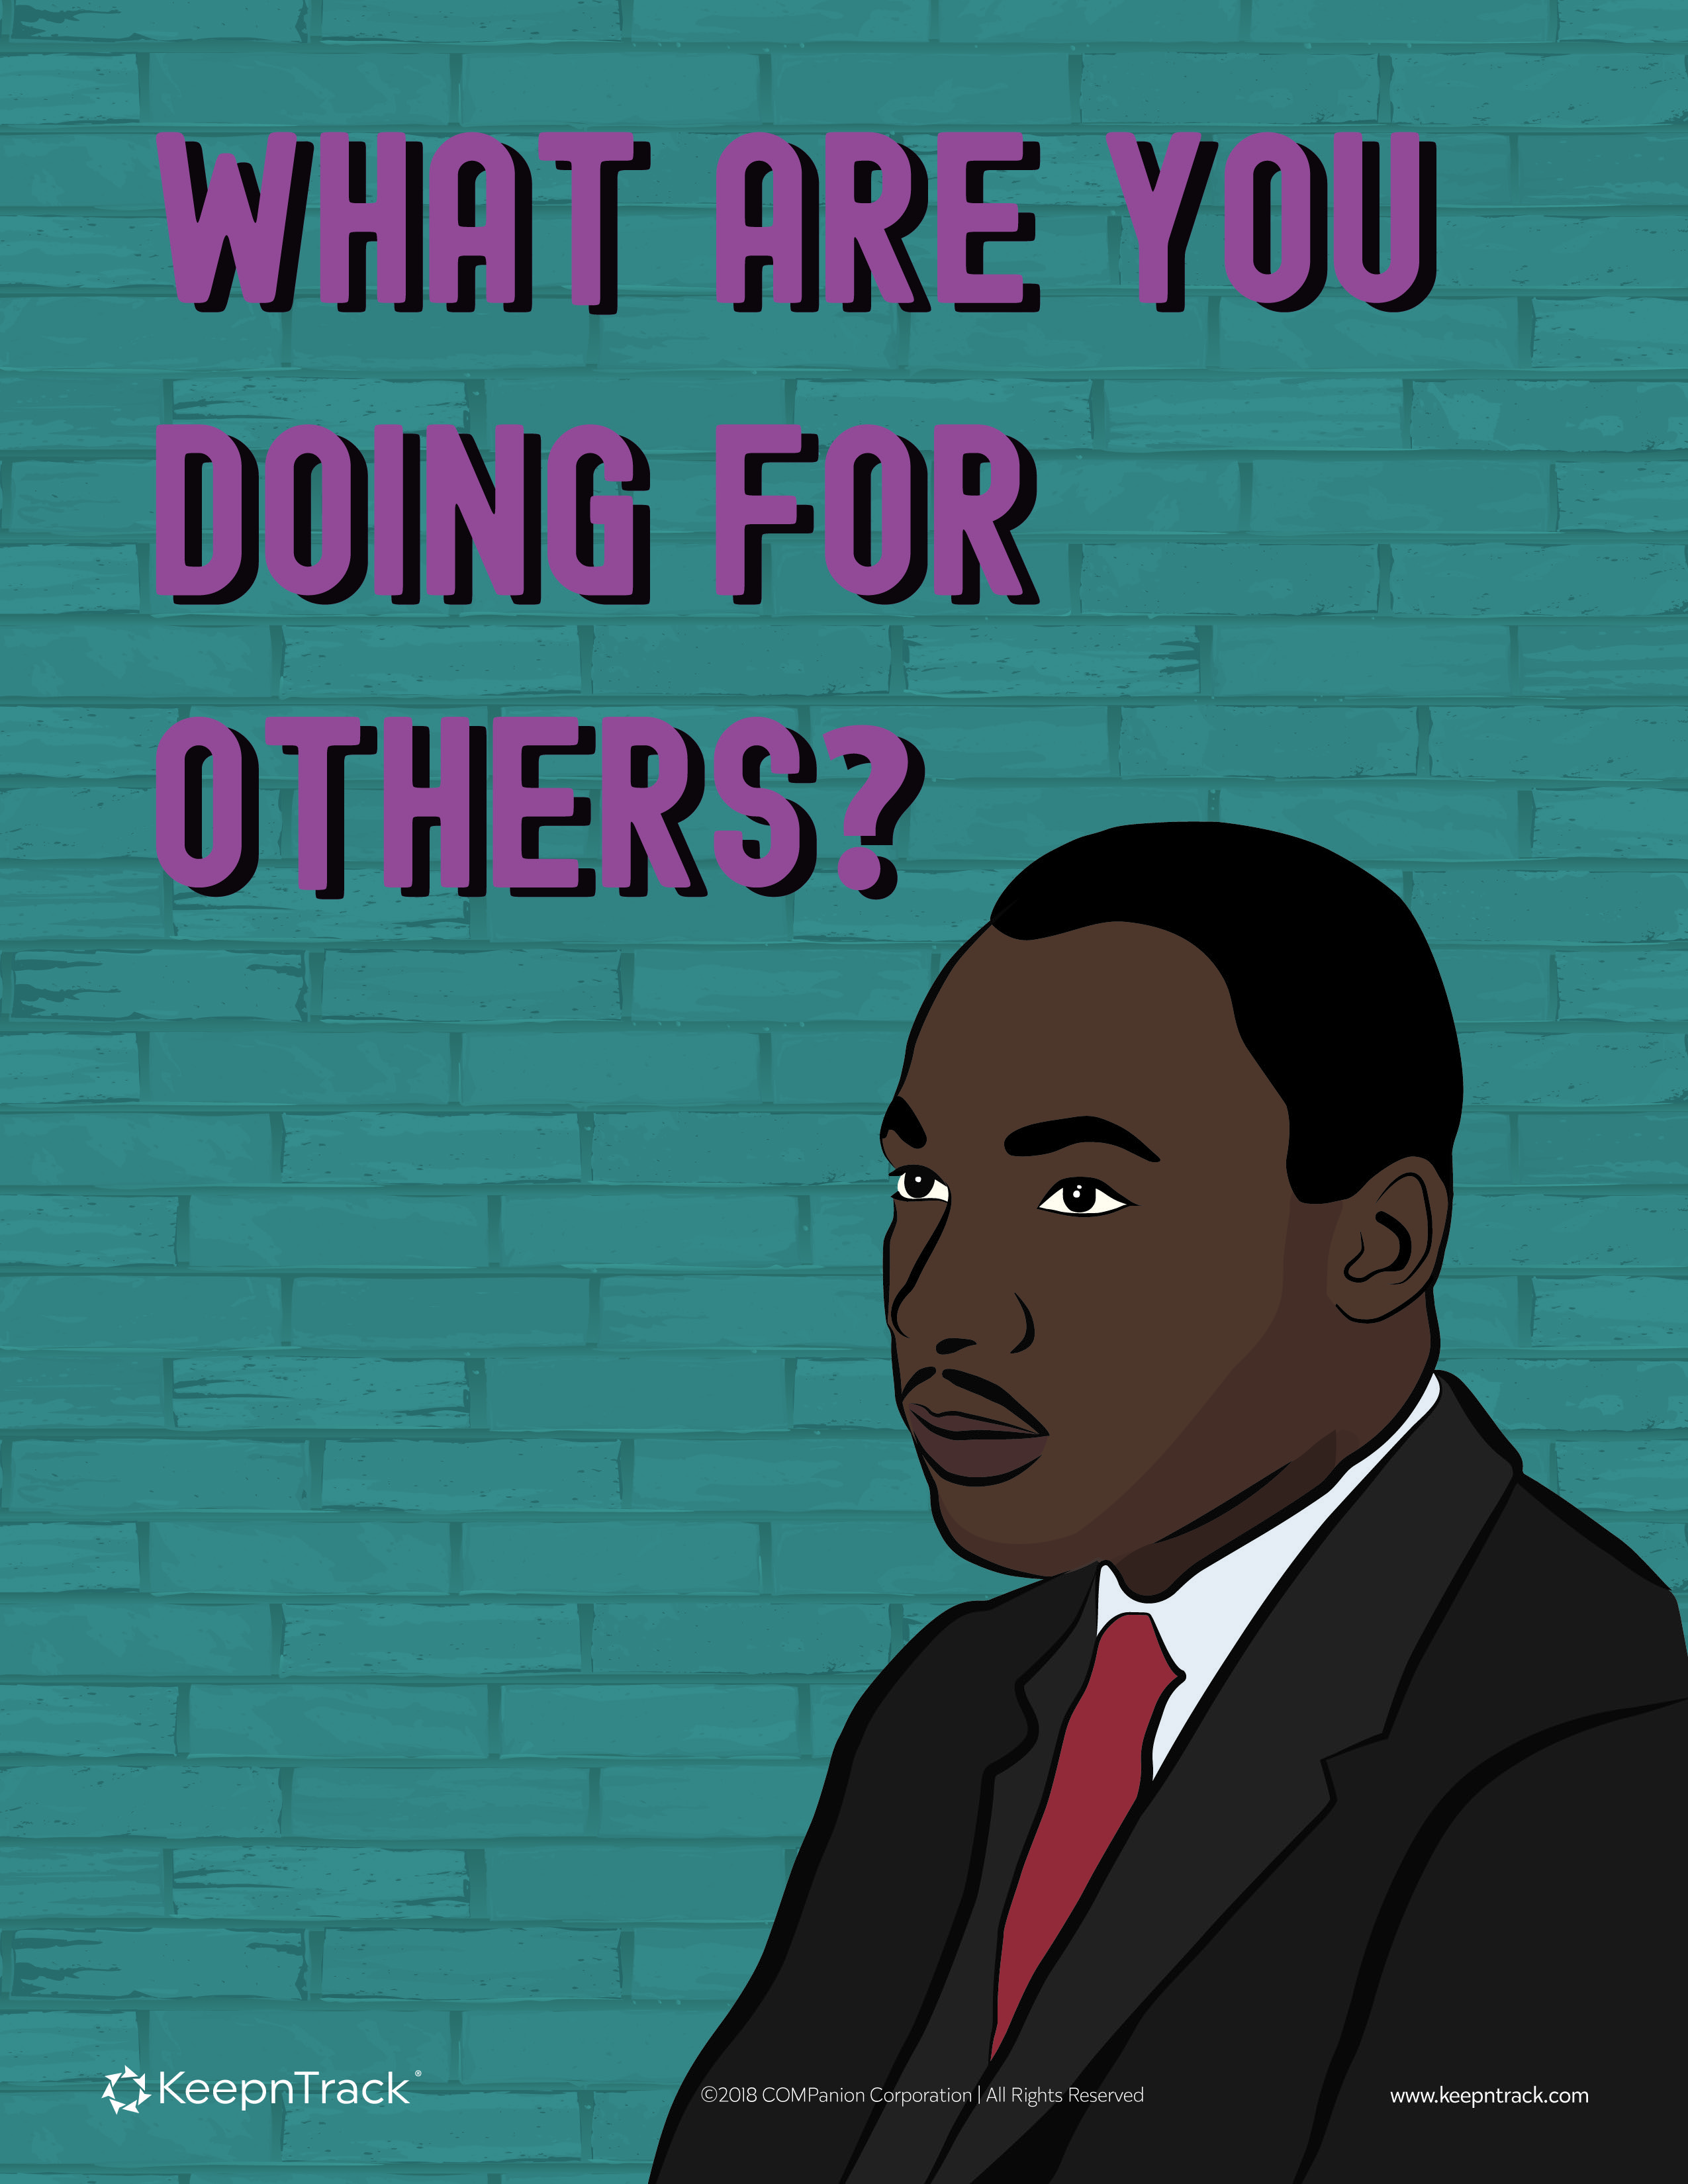 Martin Luther King Jr. Education Poster | KeepnTrack2550 x 3300